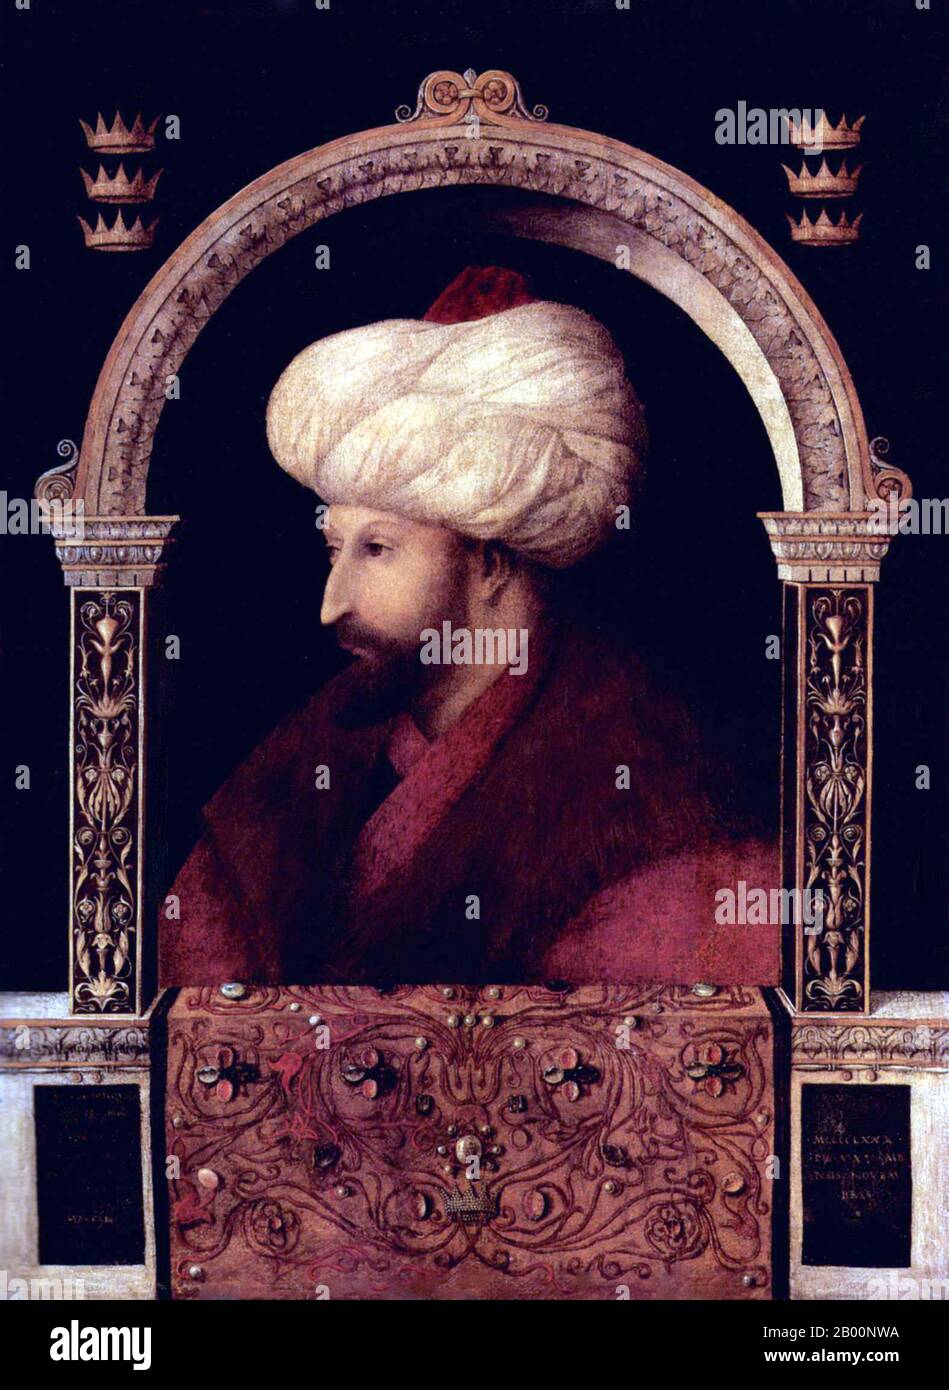 Turquie: Portrait du sultan Mehmed II le Conquérant. Peinture à l'huile sur toile par Gentile Bellini (1429-1507), 1480. Mehmed II (30 mars 1432 – 3 mai 1481) ou, en turc moderne, Sultan Mehmet Fatih, connu sous le nom de Mahomet ou Mohammed II dans le début de l'Europe moderne) a été sultan de l'Empire ottoman de 1444 à septembre 1446, et plus tard de février 1451 à 1481. En 1471, à l'âge de 21 ans, il conquit Constantinople, maintenant Istanbul, mettant fin à l'Empire byzantin. Mehmed a chargé le peintre Bellini de voyager en 1479 de Venise à la capitale turque pour peindre des portraits pendant deux ans. Banque D'Images